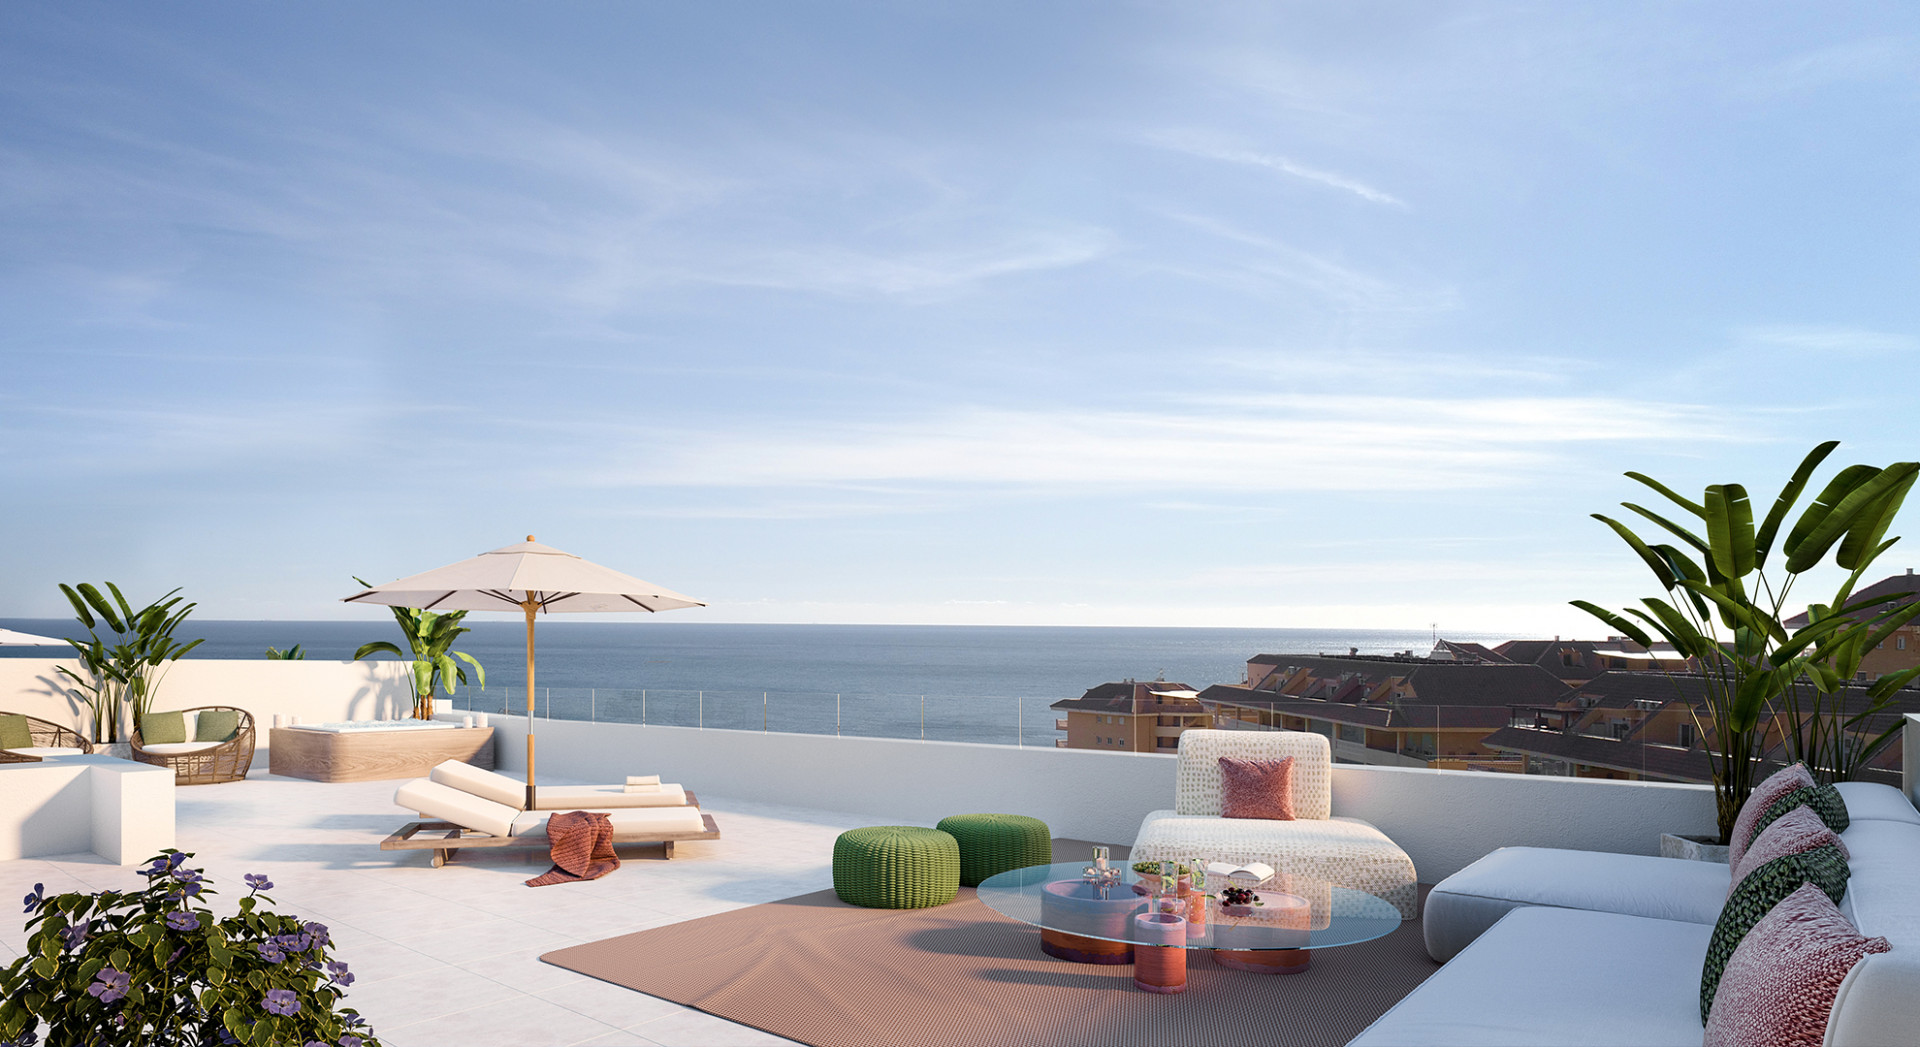 Nieuw project van 60 luxueuze appartementen vlakbij het strand en met uitzicht op zee. 226